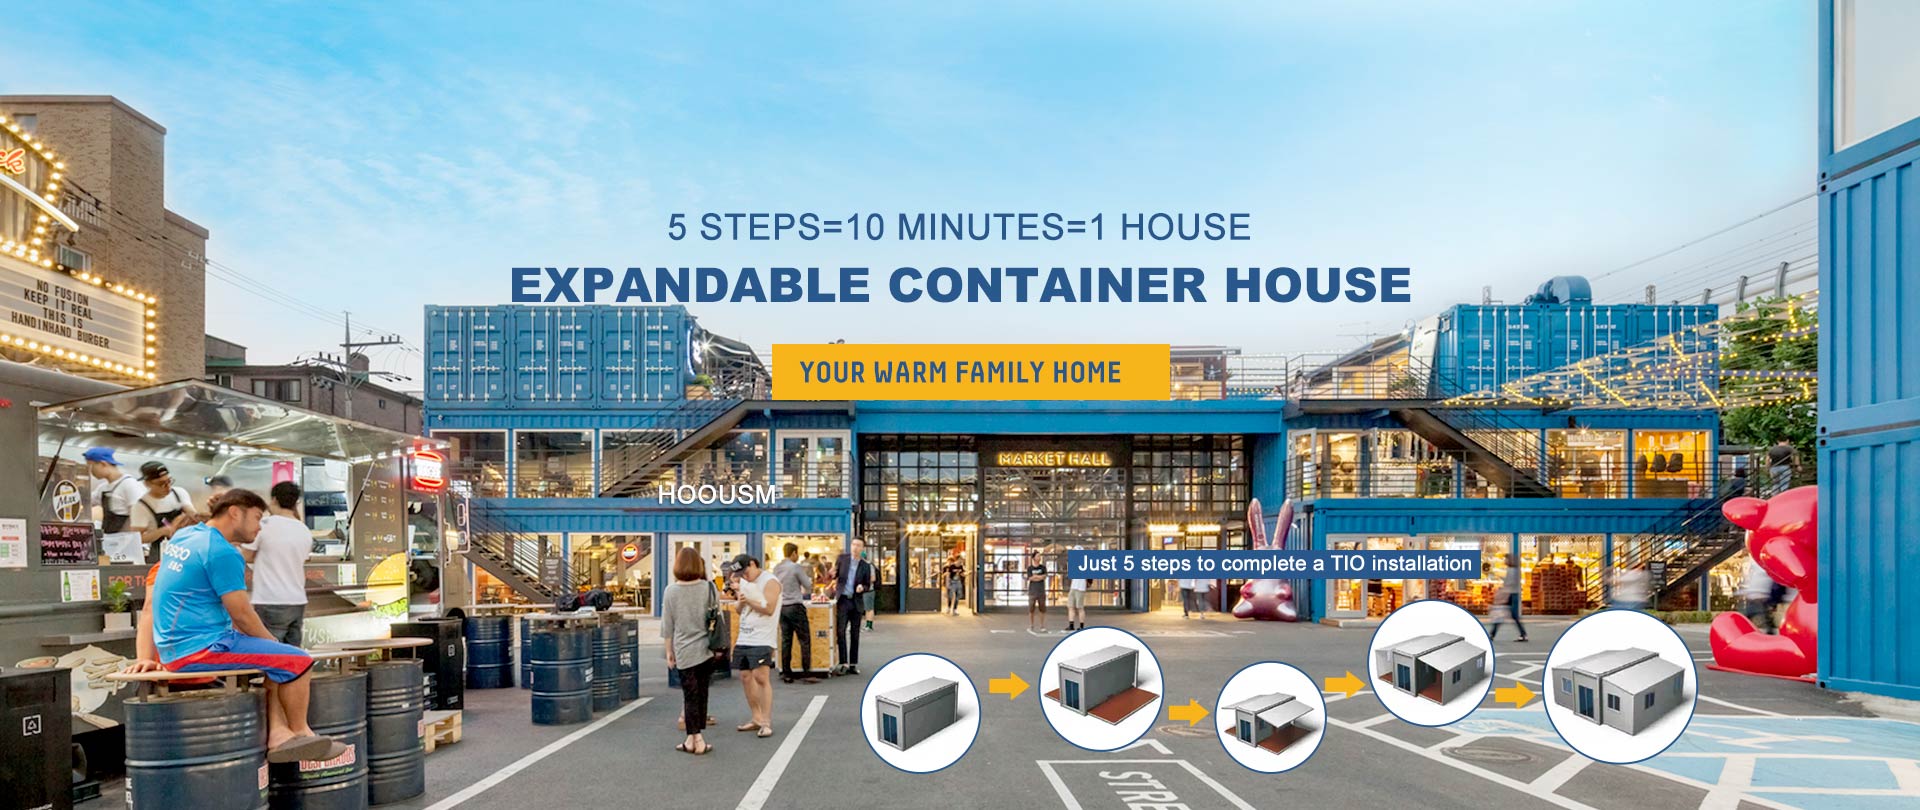 Erweiterbare Container Haus